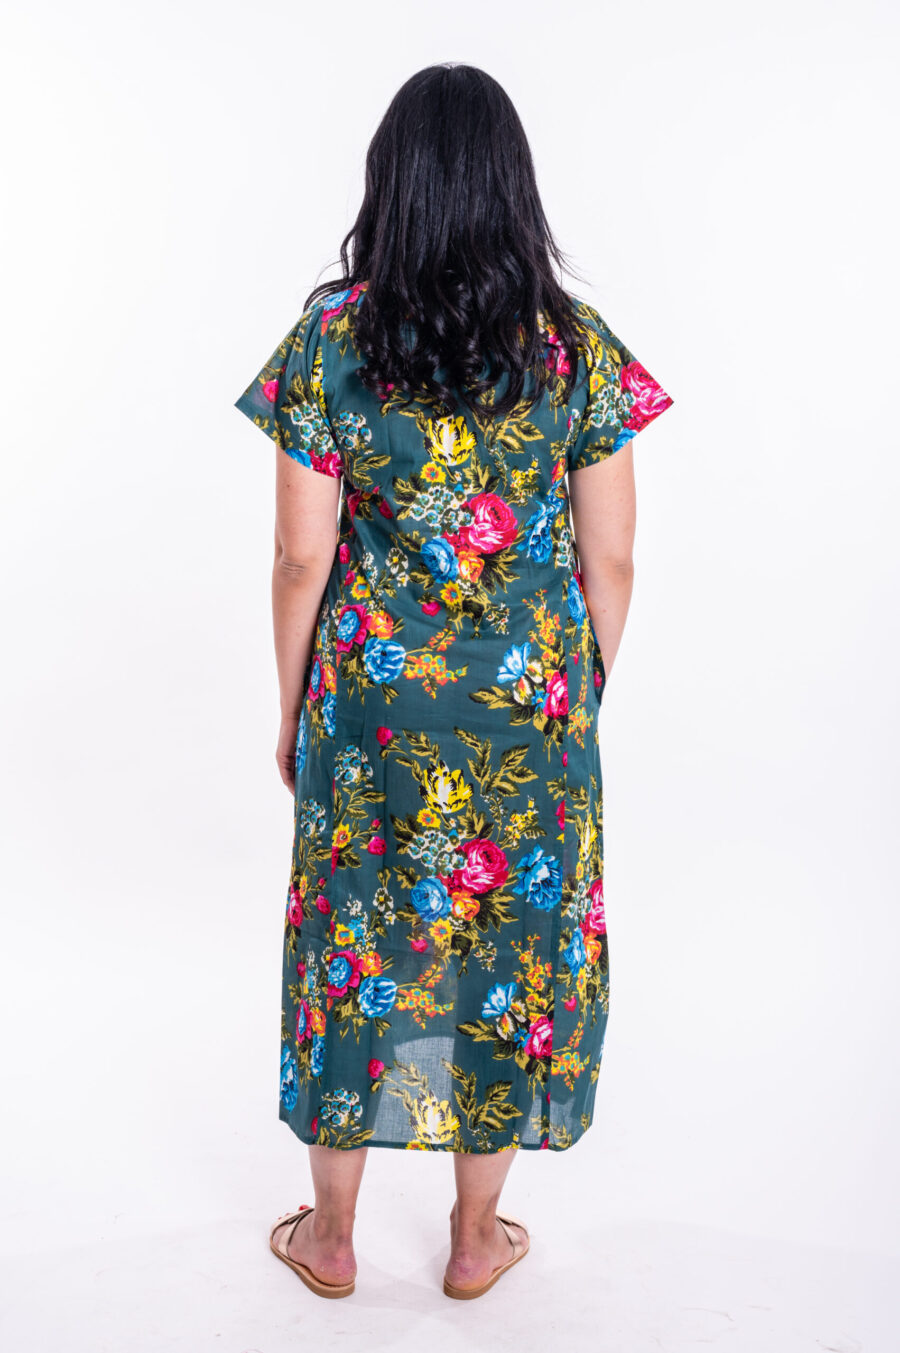 גלביה לנשים | גלבייה בעיצוב ייחודי - שמלה ירוקה עם הדפס פרחים צבעוני